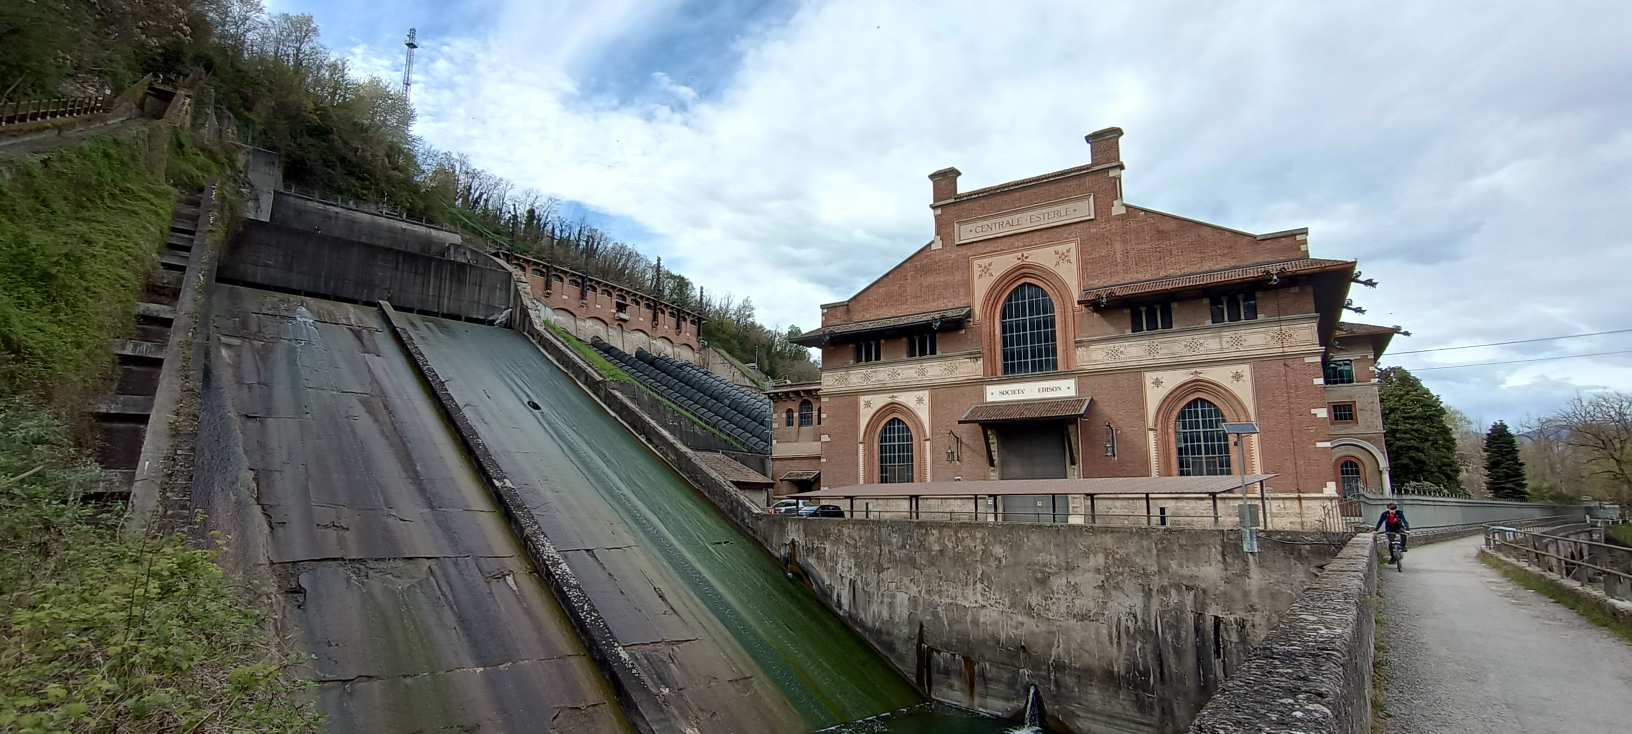 Centrale idroelettrica Esterle